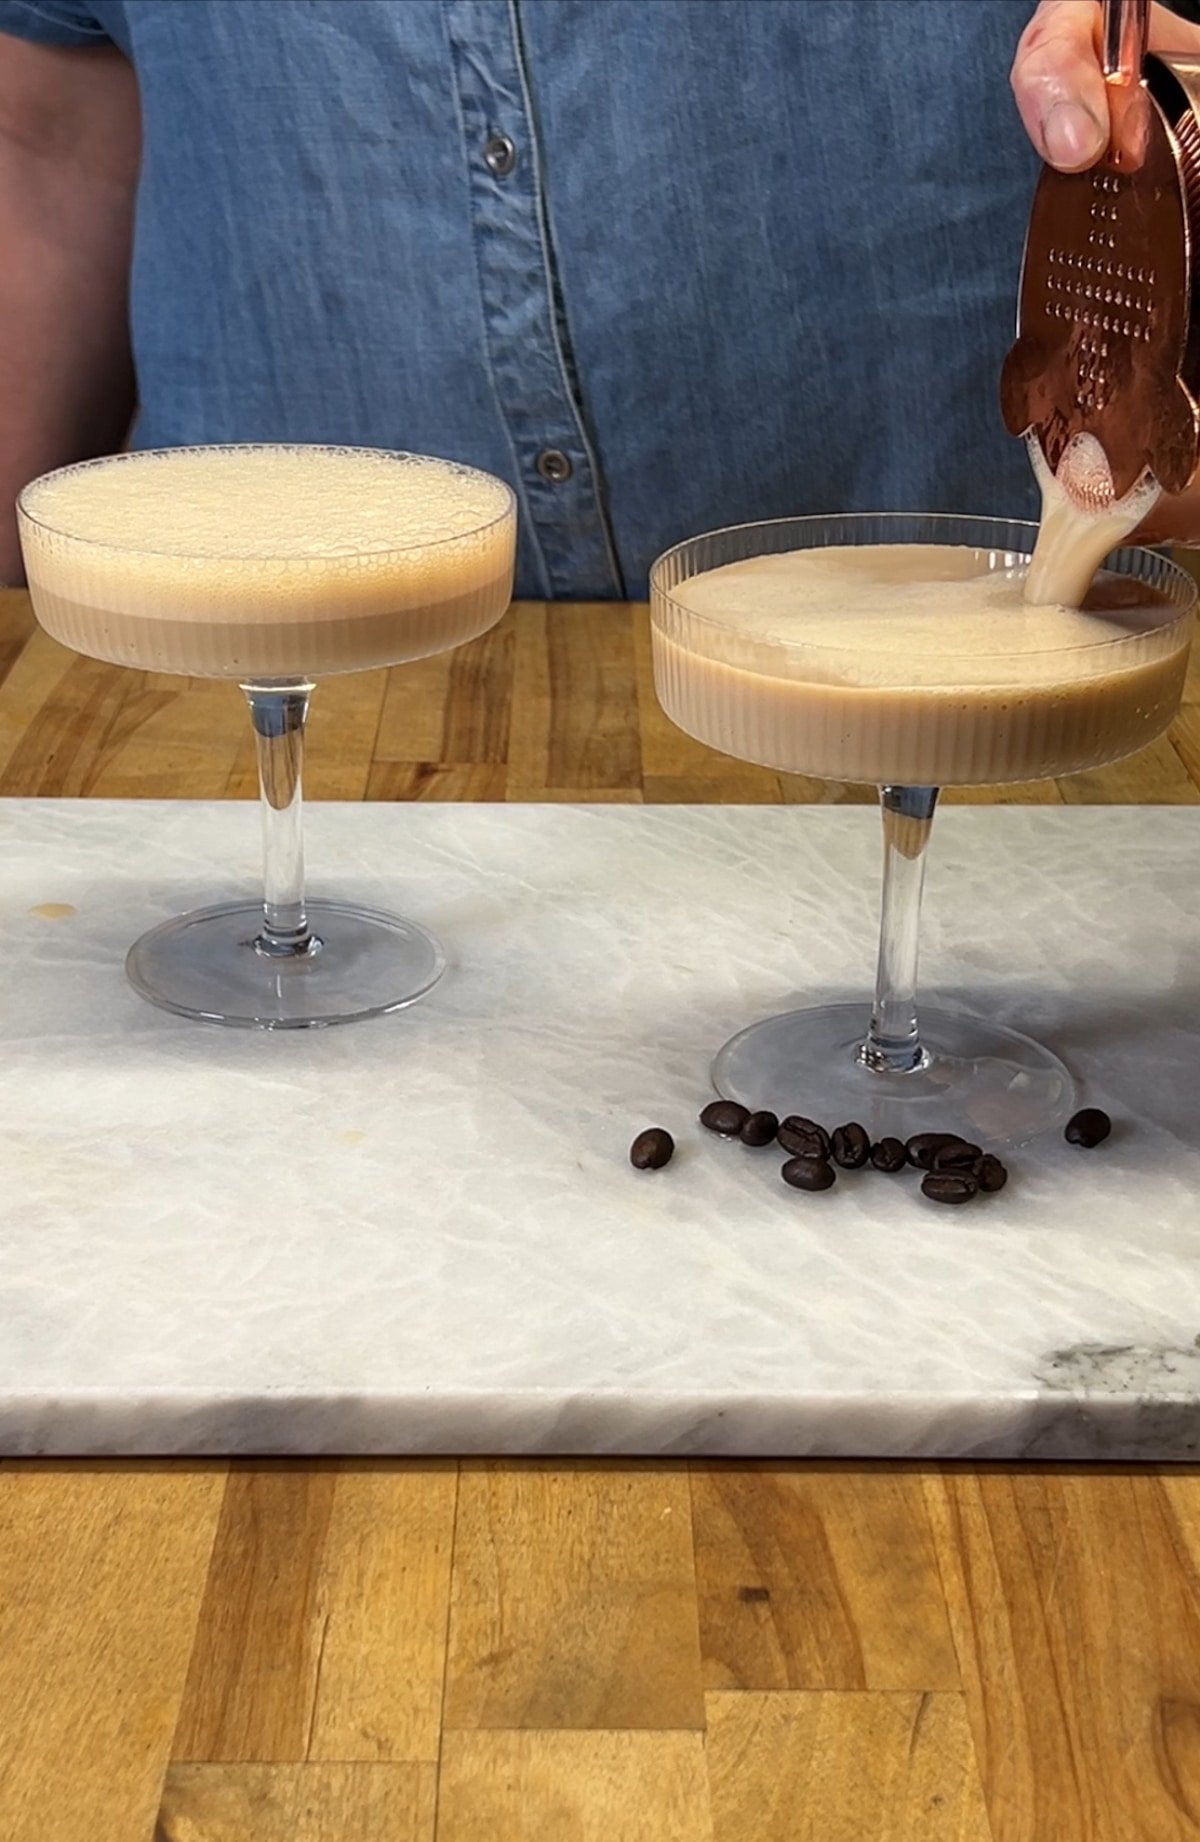 Straining espresso martini into cocktail glasses.